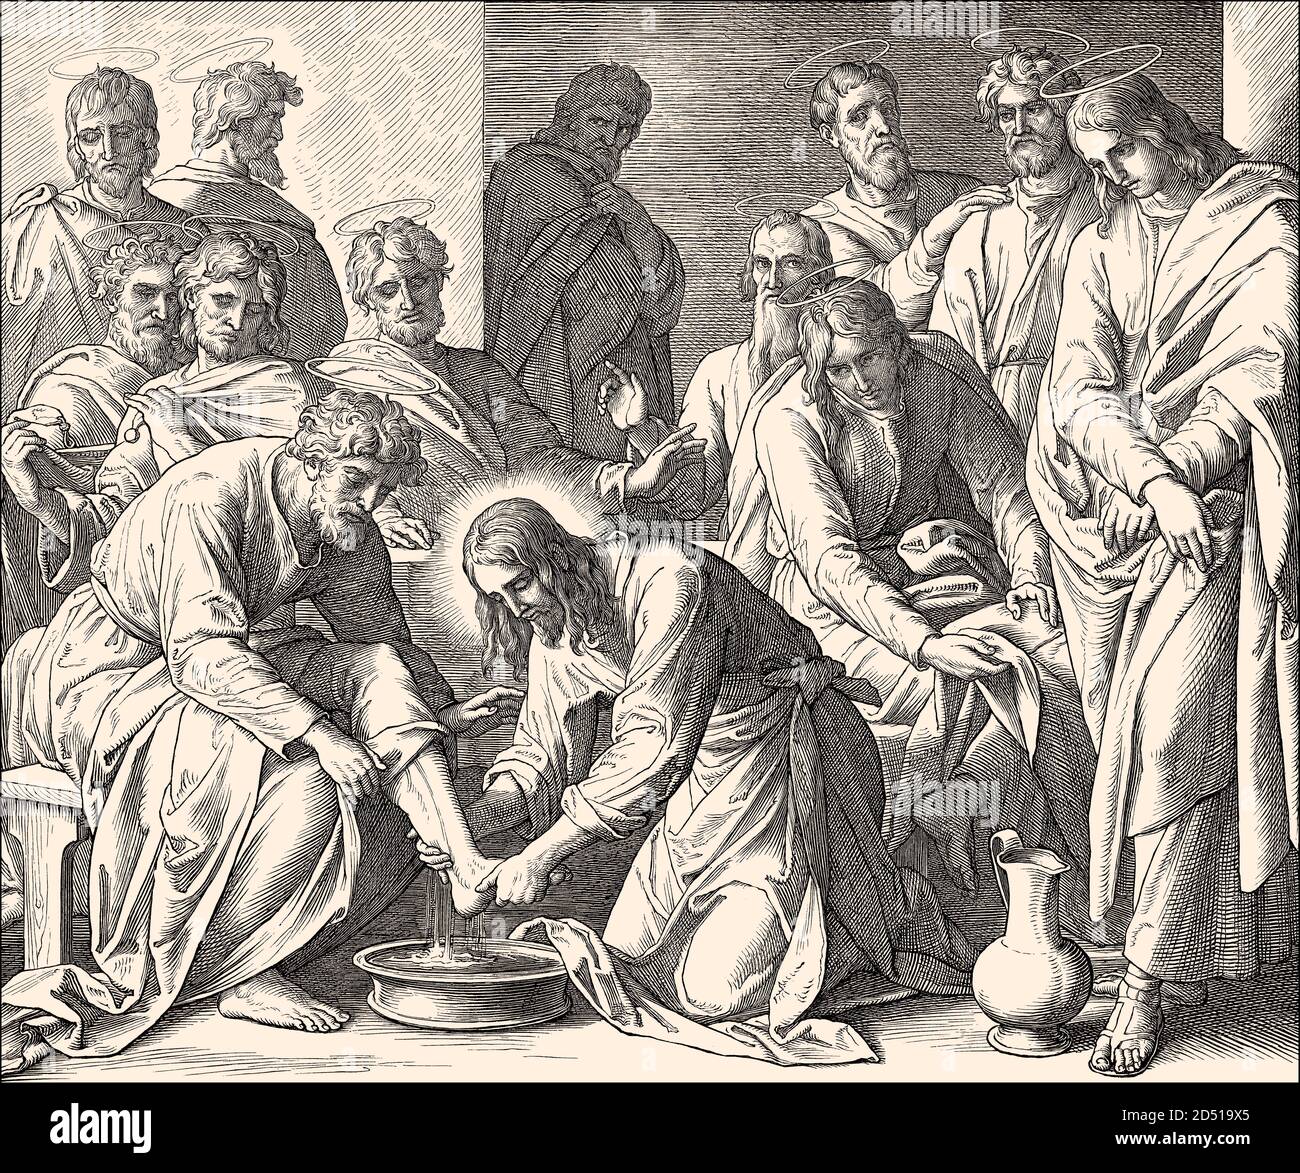 Jesus Washes the Disciples' Feet, New Testament, by Julius Schnorr von Carolsfeld, 1860 Stock Photo